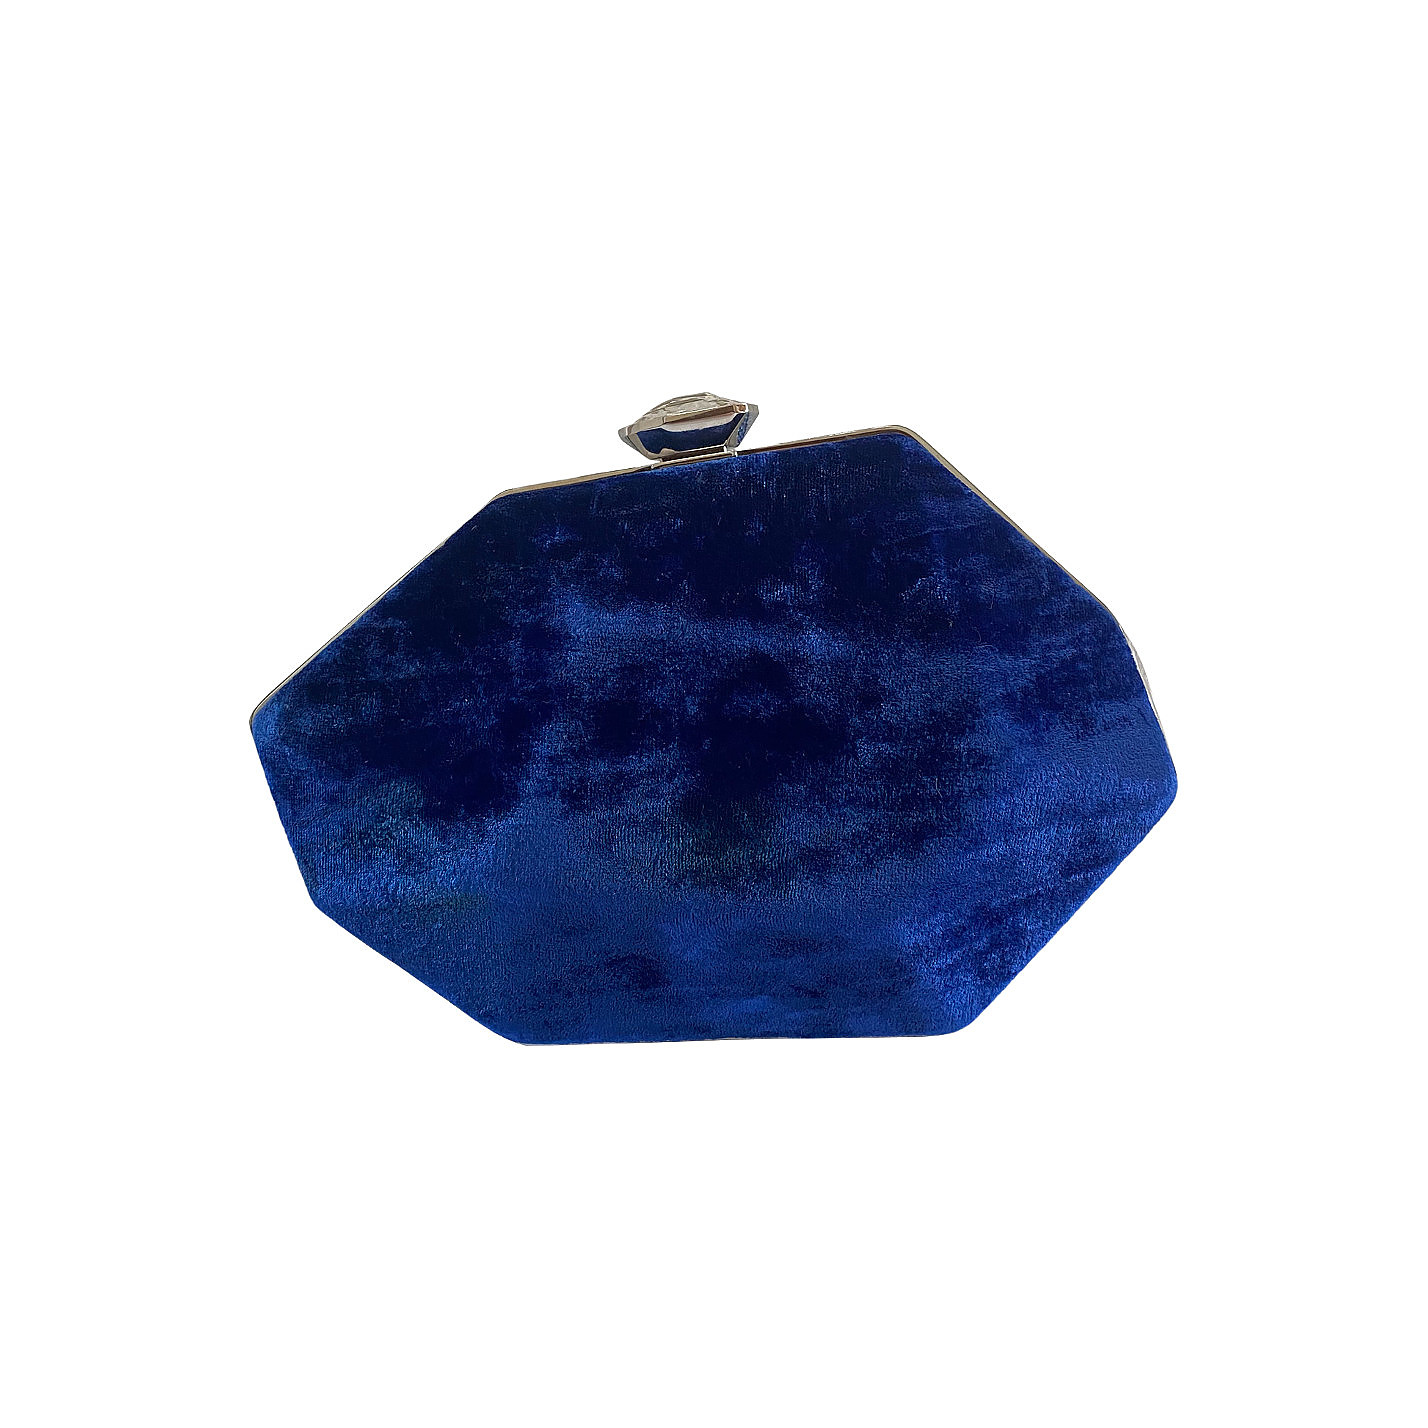 Atelier Swarovski Crystal geometric clutch with velvet contrast